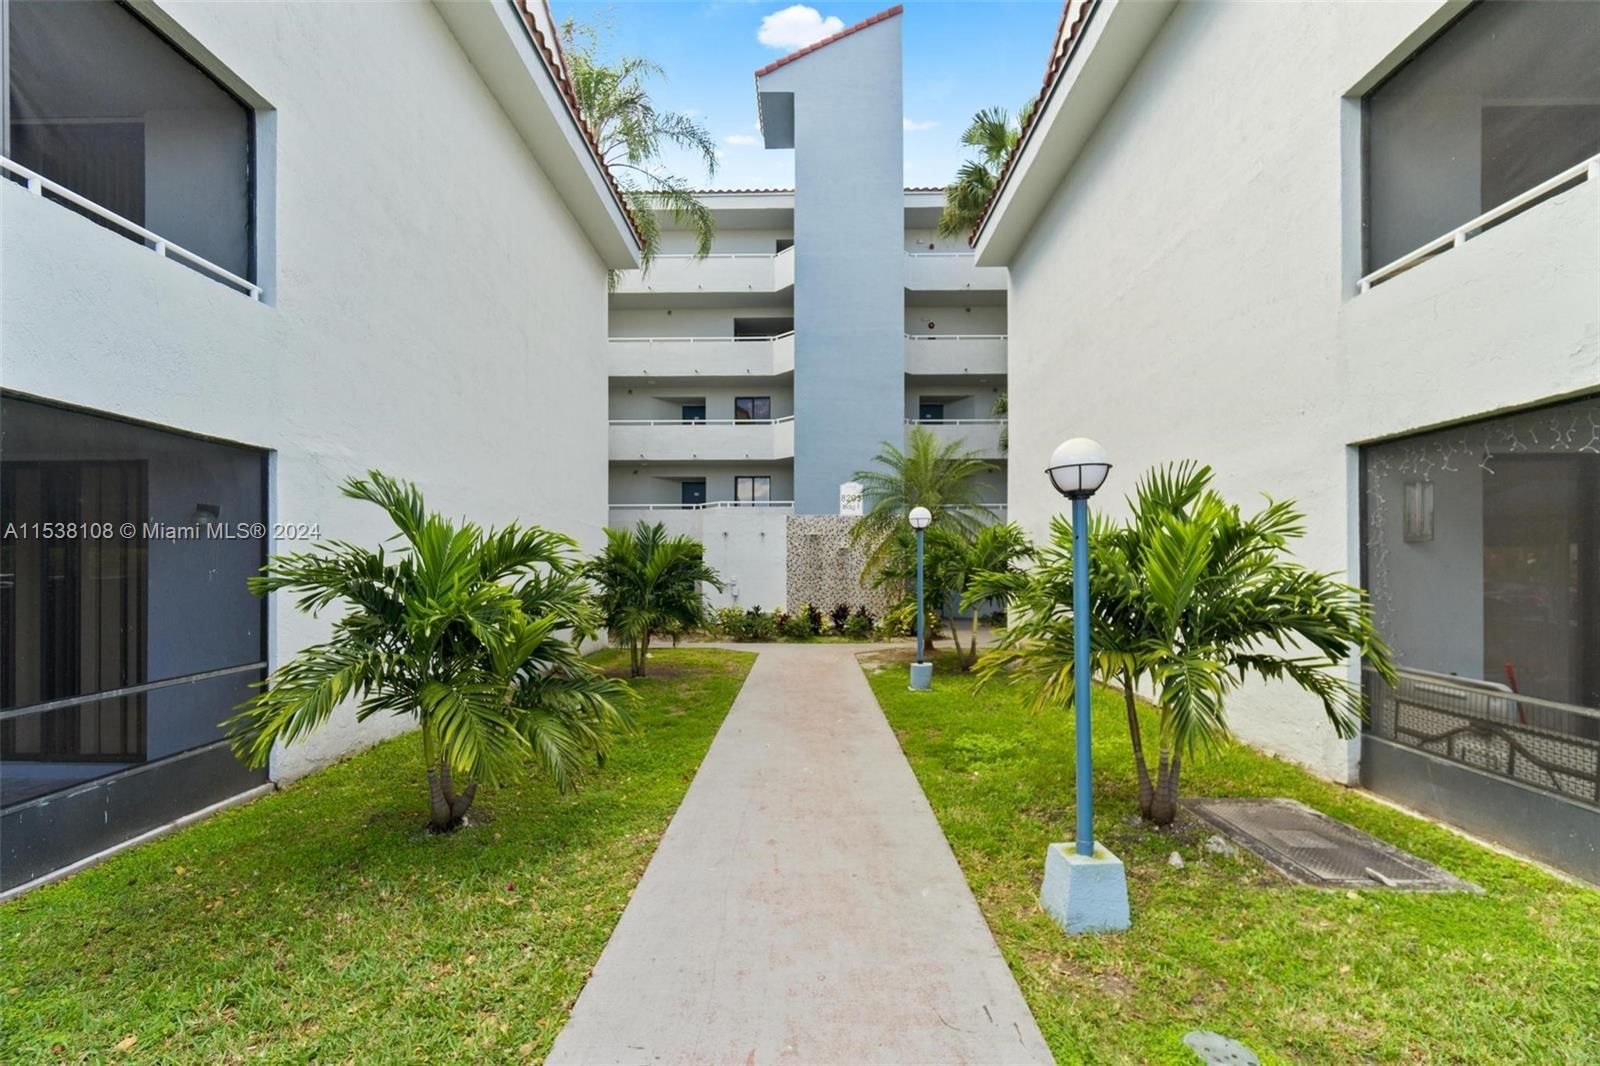 Real estate property located at 8205 152nd Ave F-408, Miami-Dade County, VERABELLA FALLS CONDO, Miami, FL